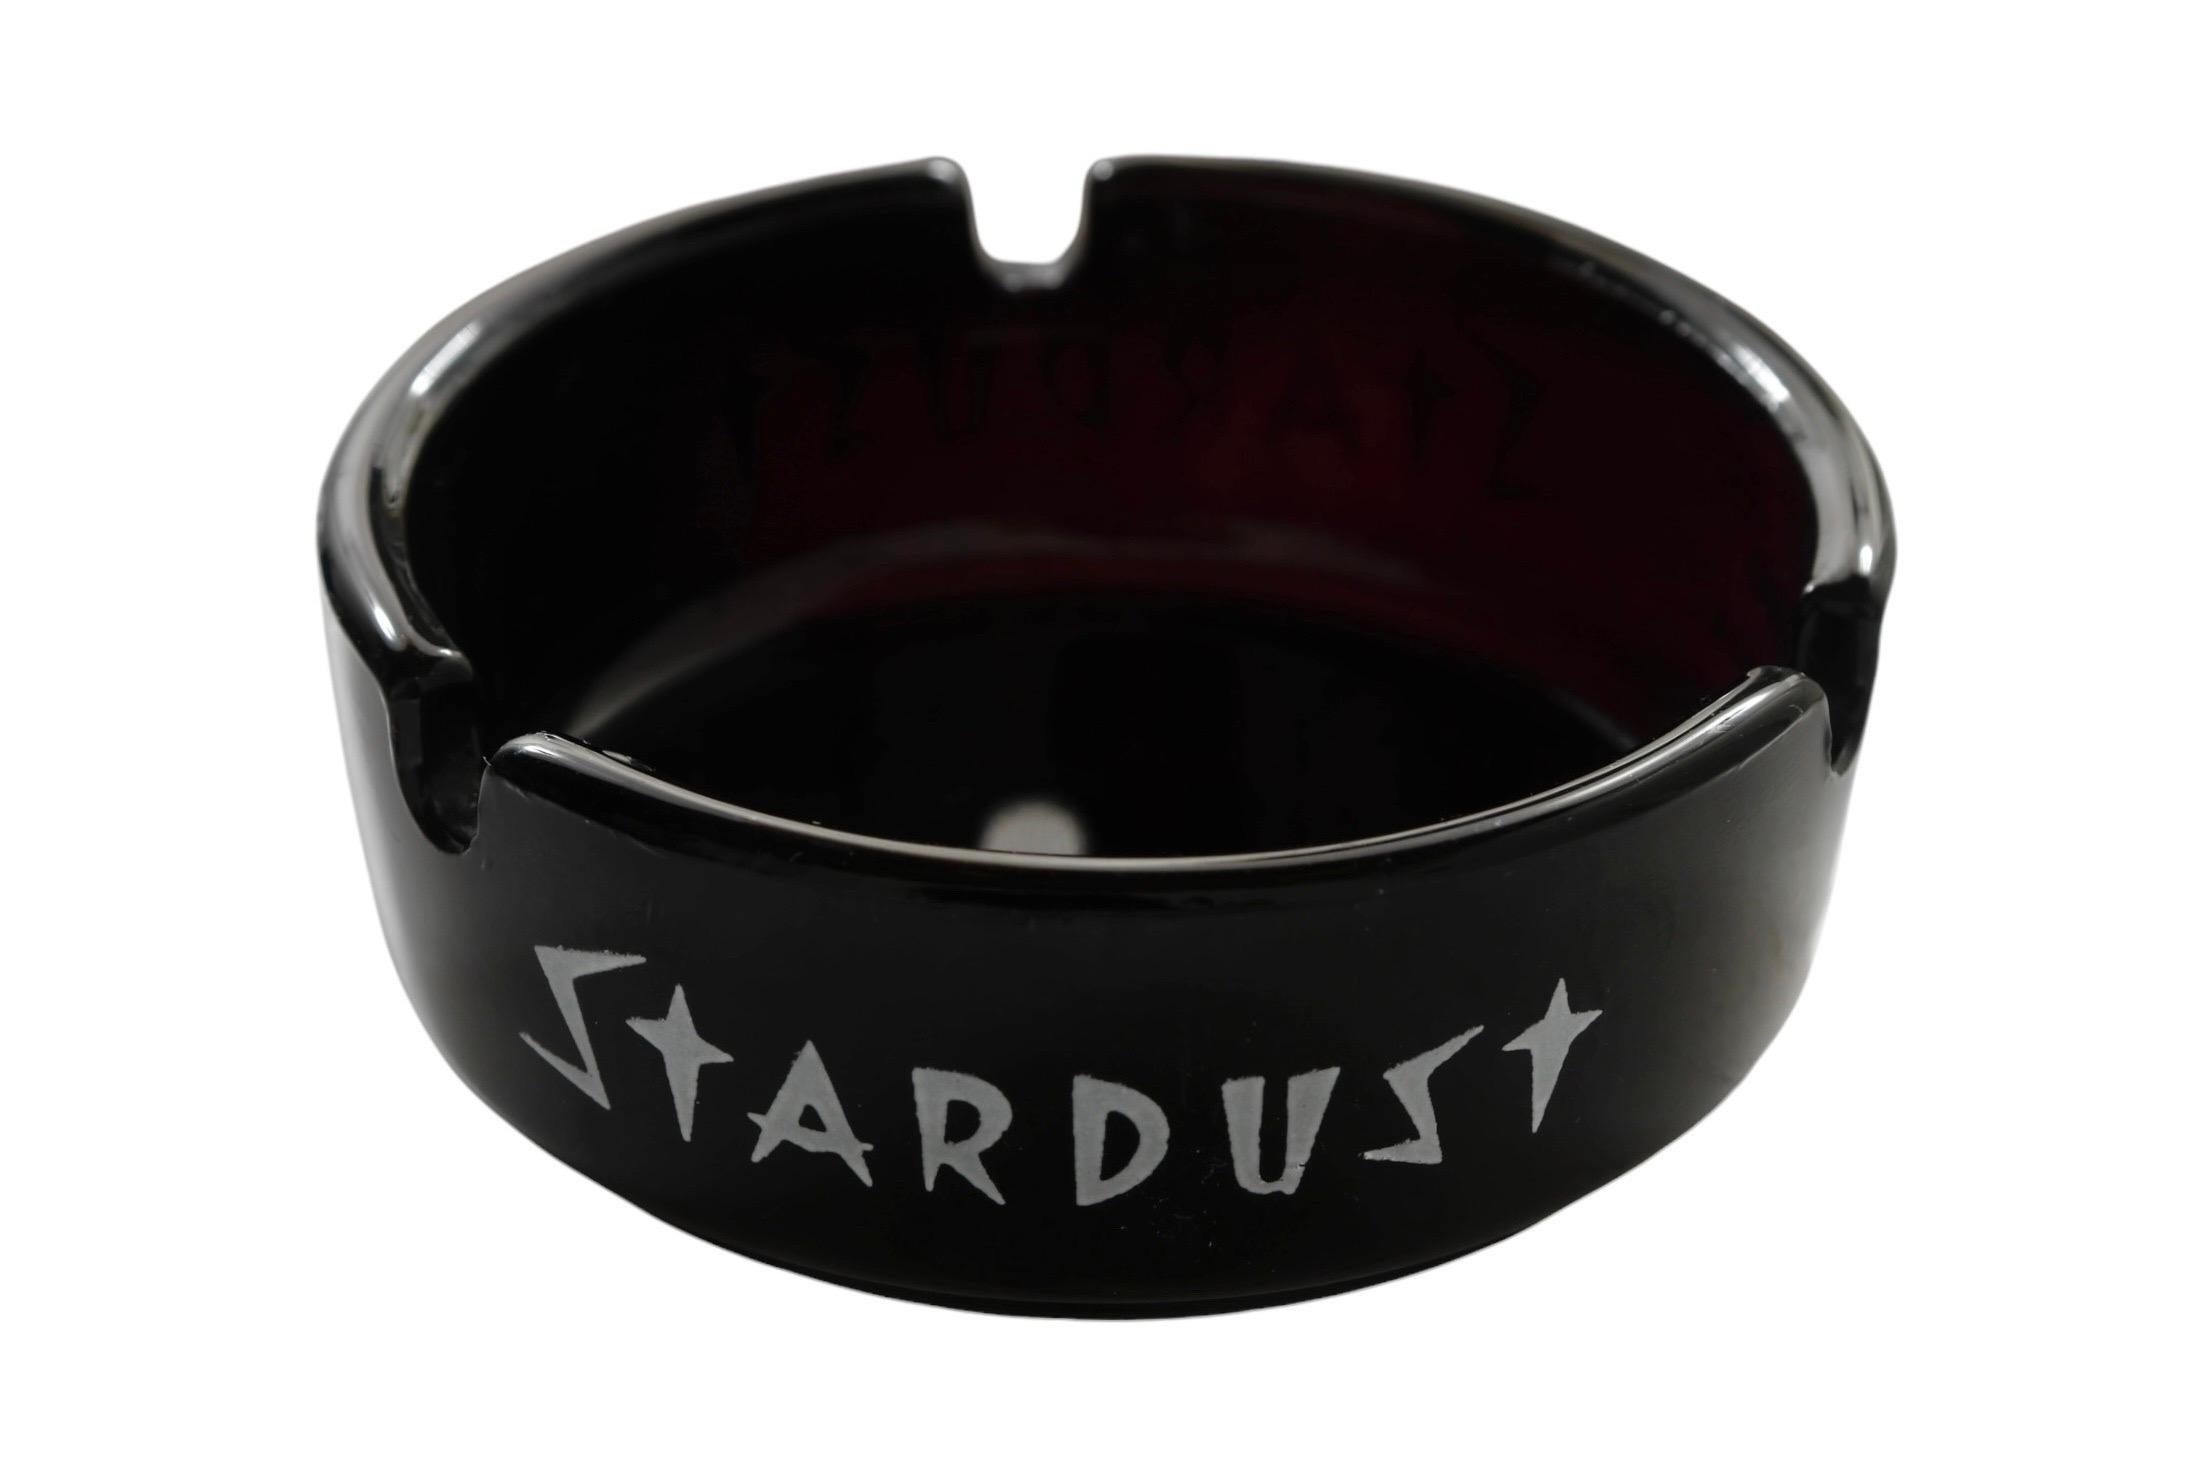 Cendrier en verre noir provenant du Stardust Hotel & Casino de Las Vegas, Nevada. Imprimé sur le pourtour en blanc avec le logo Stardust.

